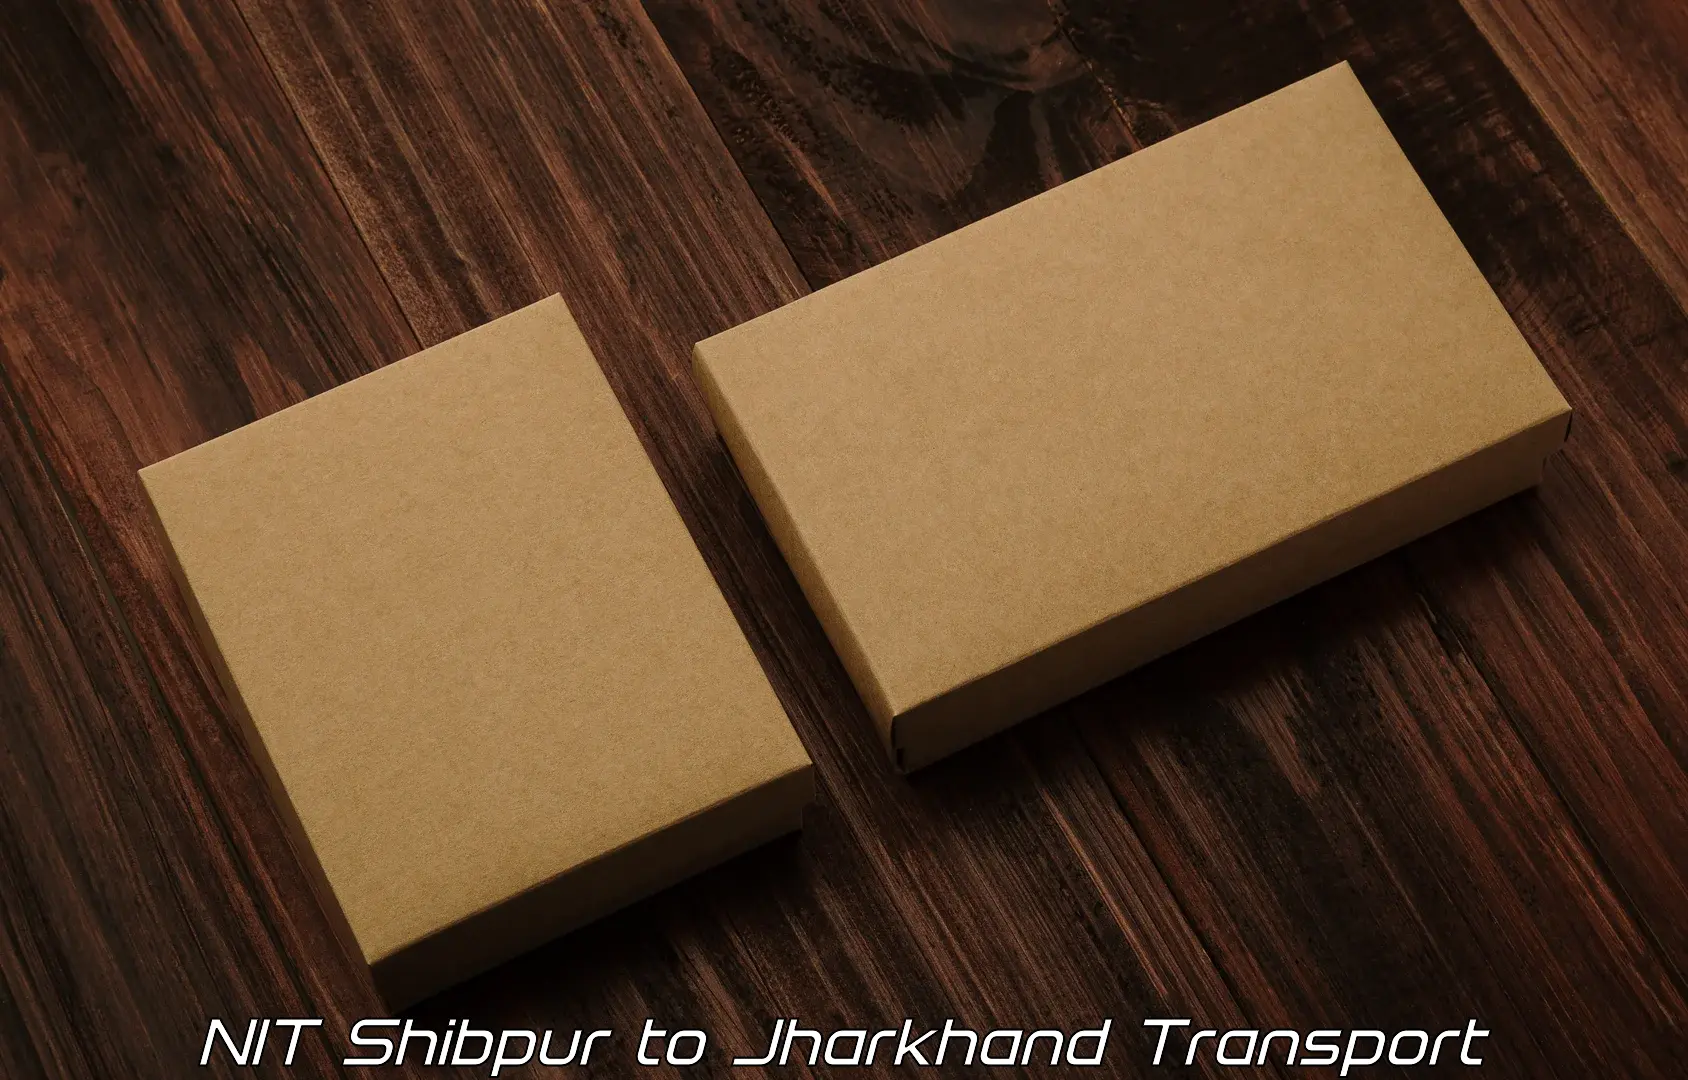 Vehicle parcel service NIT Shibpur to Bundu